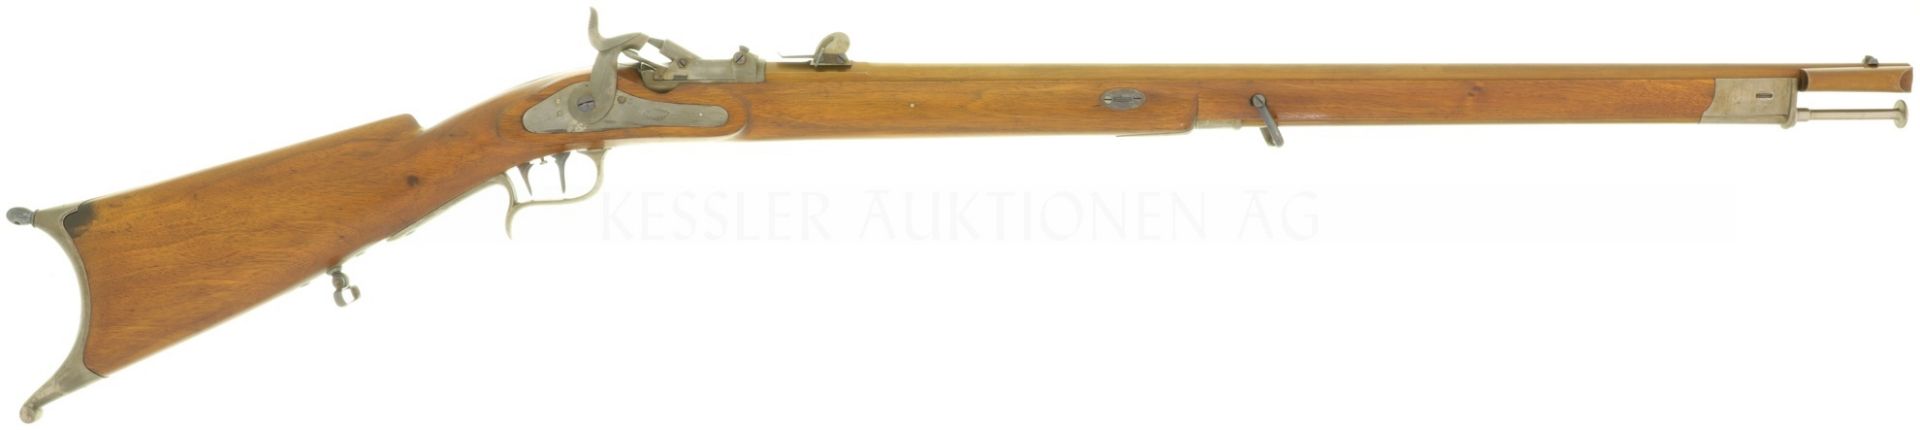 Feldstutzer 51/67, Milbank Amsler, aufgerüstet, Kal. 10.4mm